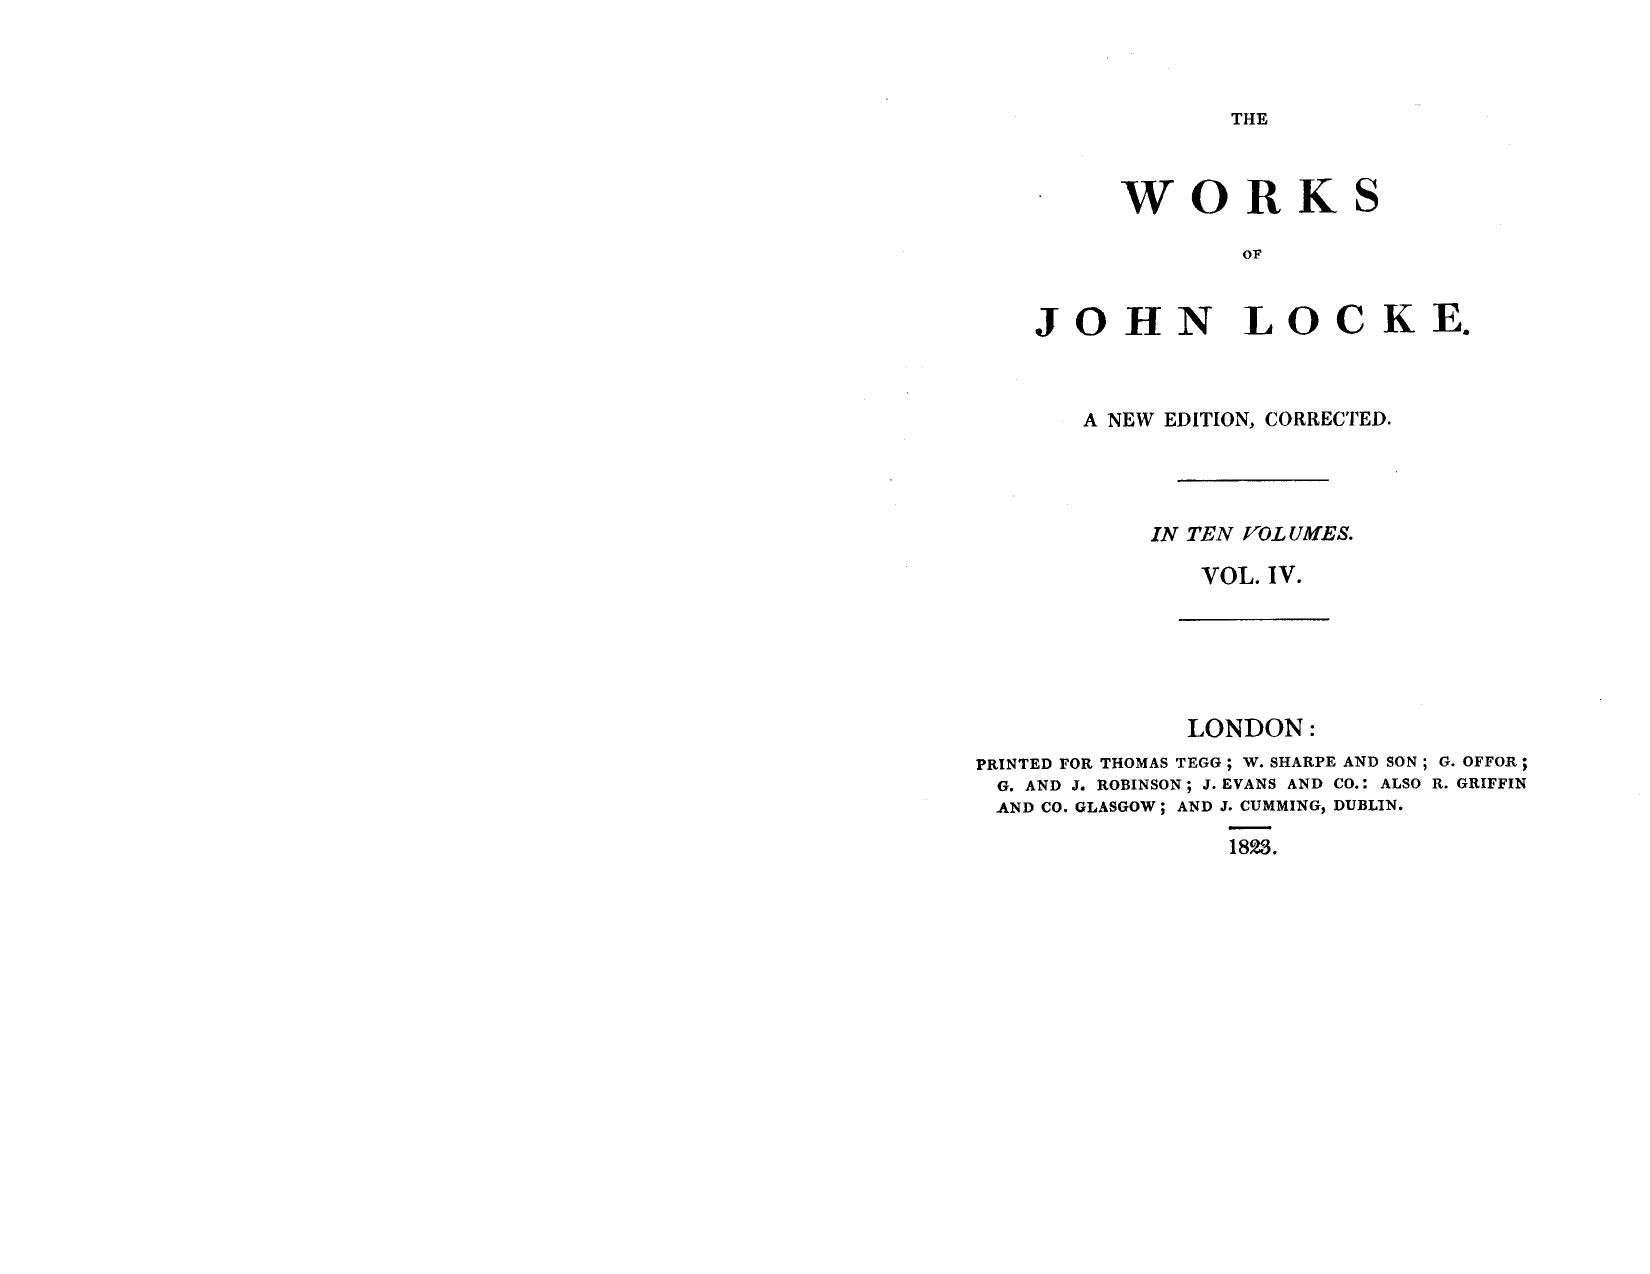 The works of John Locke 04 by John Locke